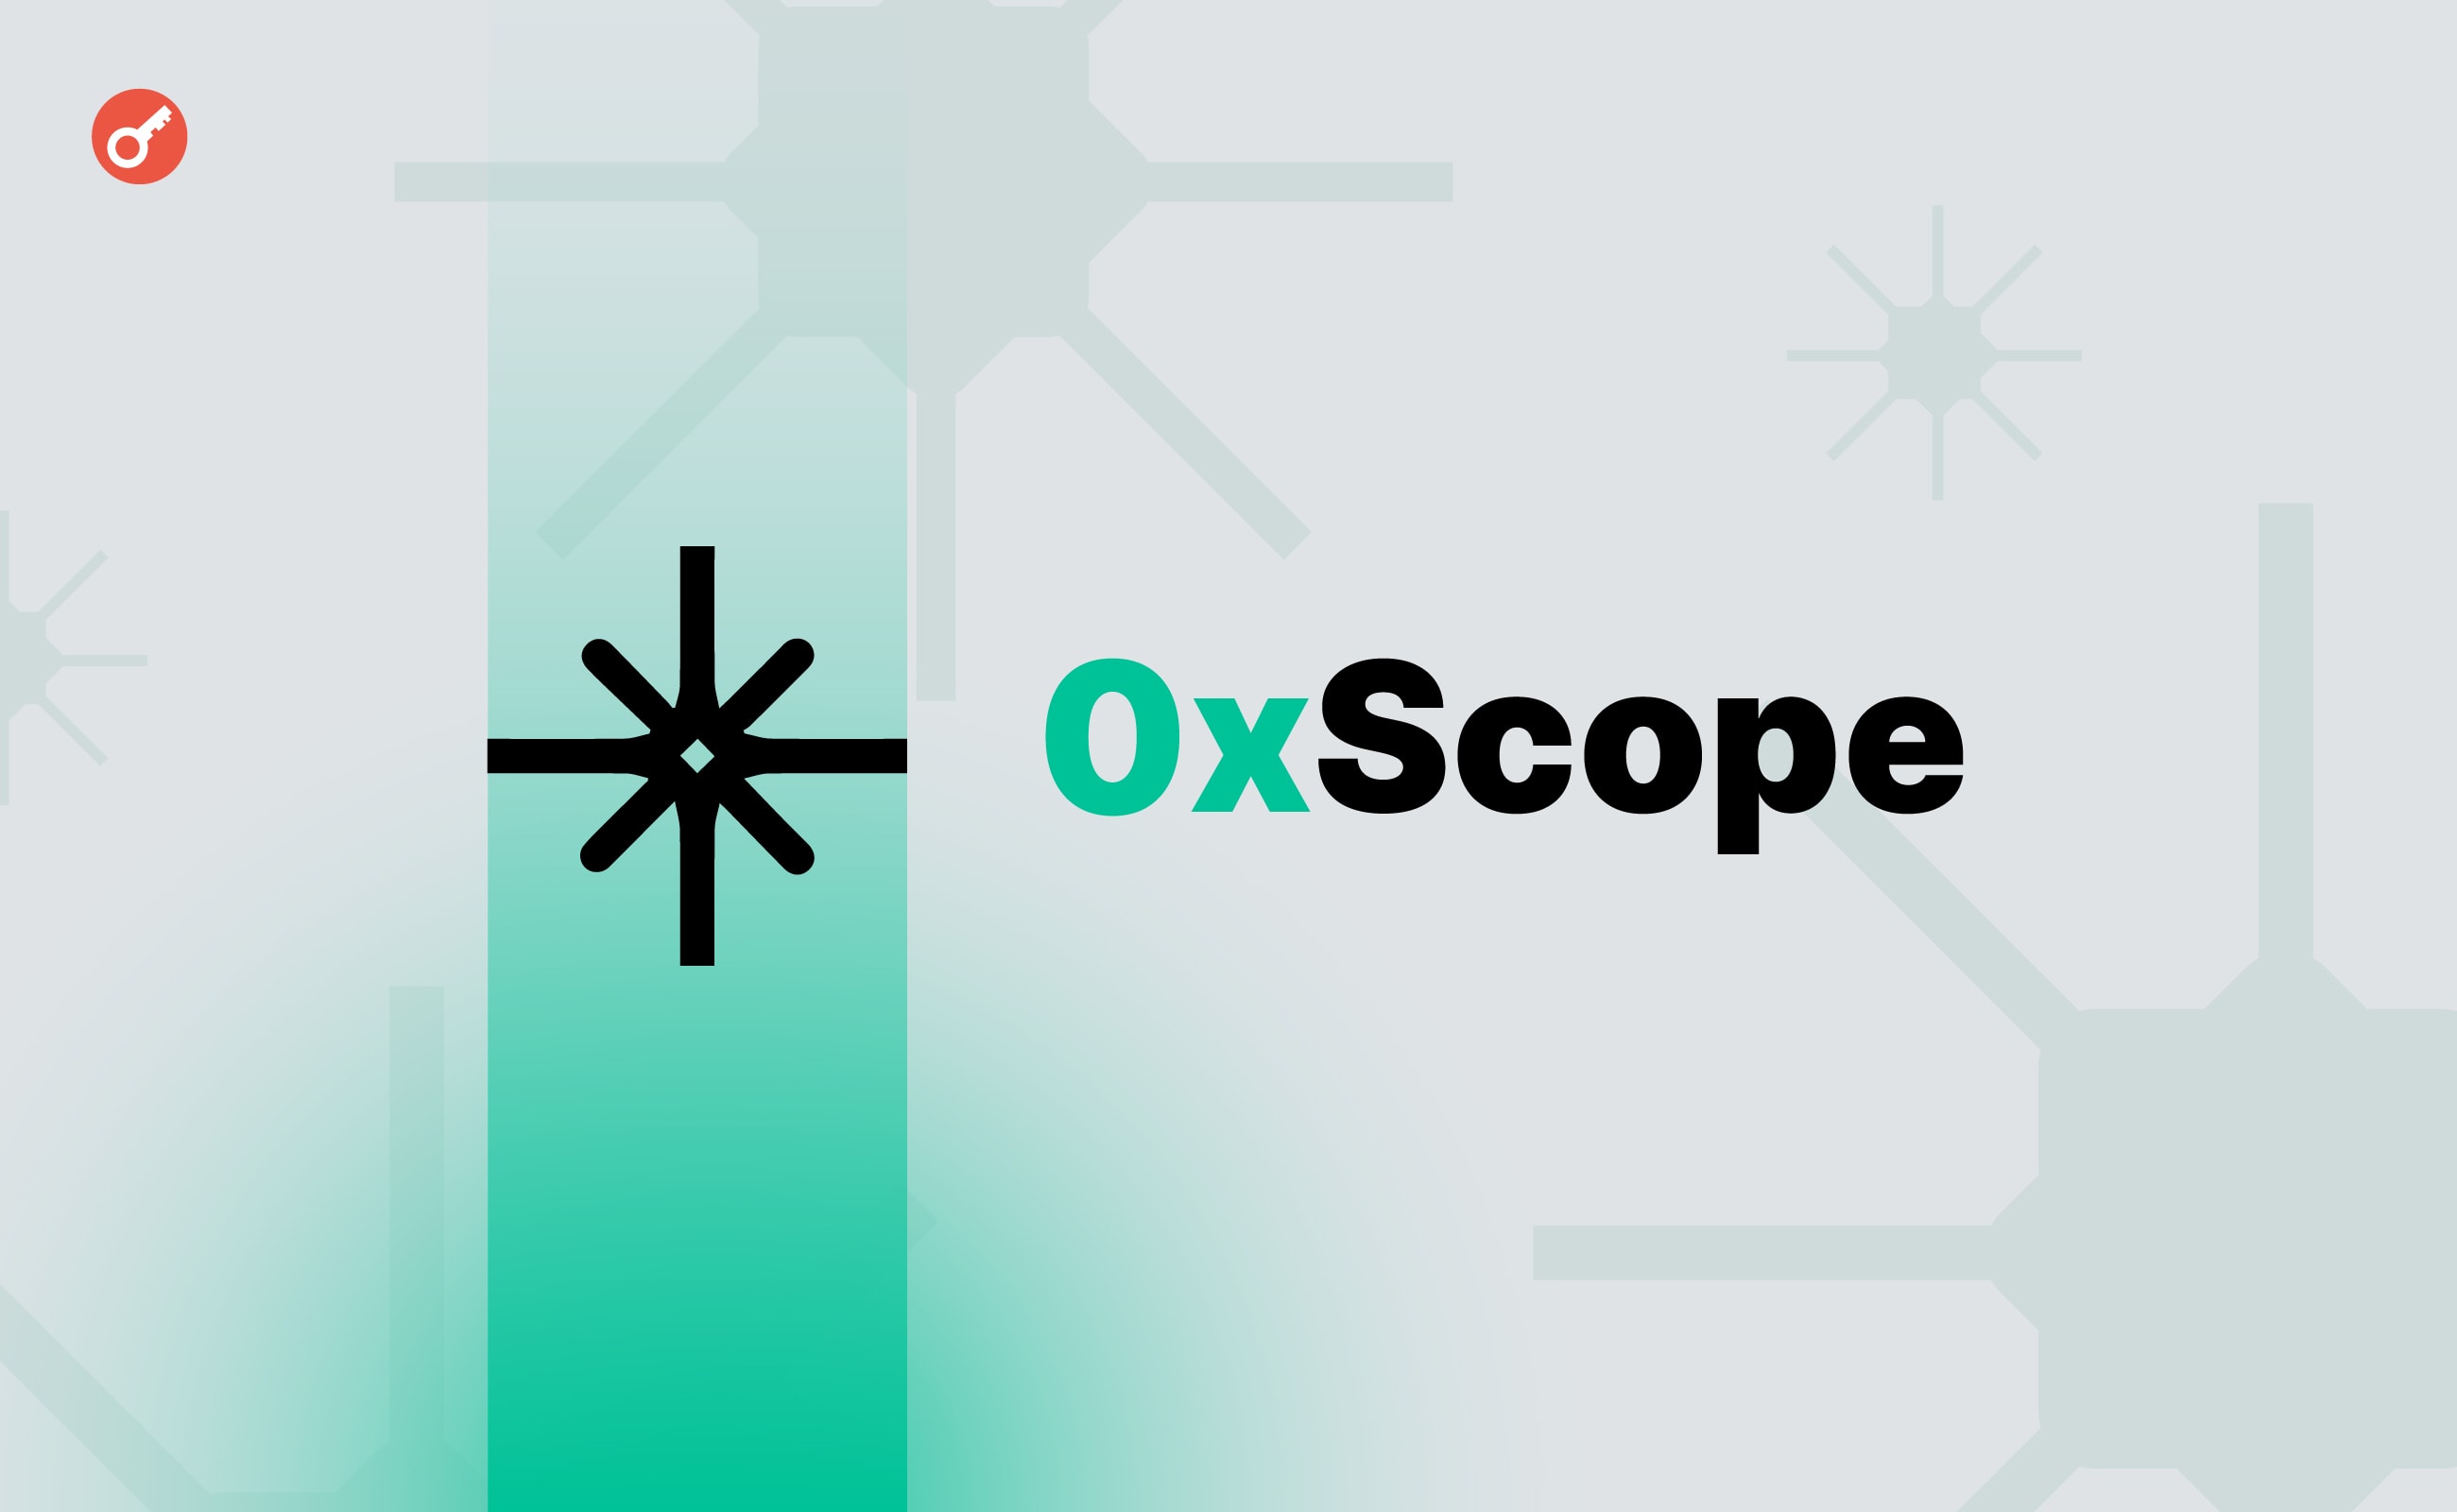 Протокол 0xScope залучив $5 млн для аналізу даних у Web3. Головний колаж новини.